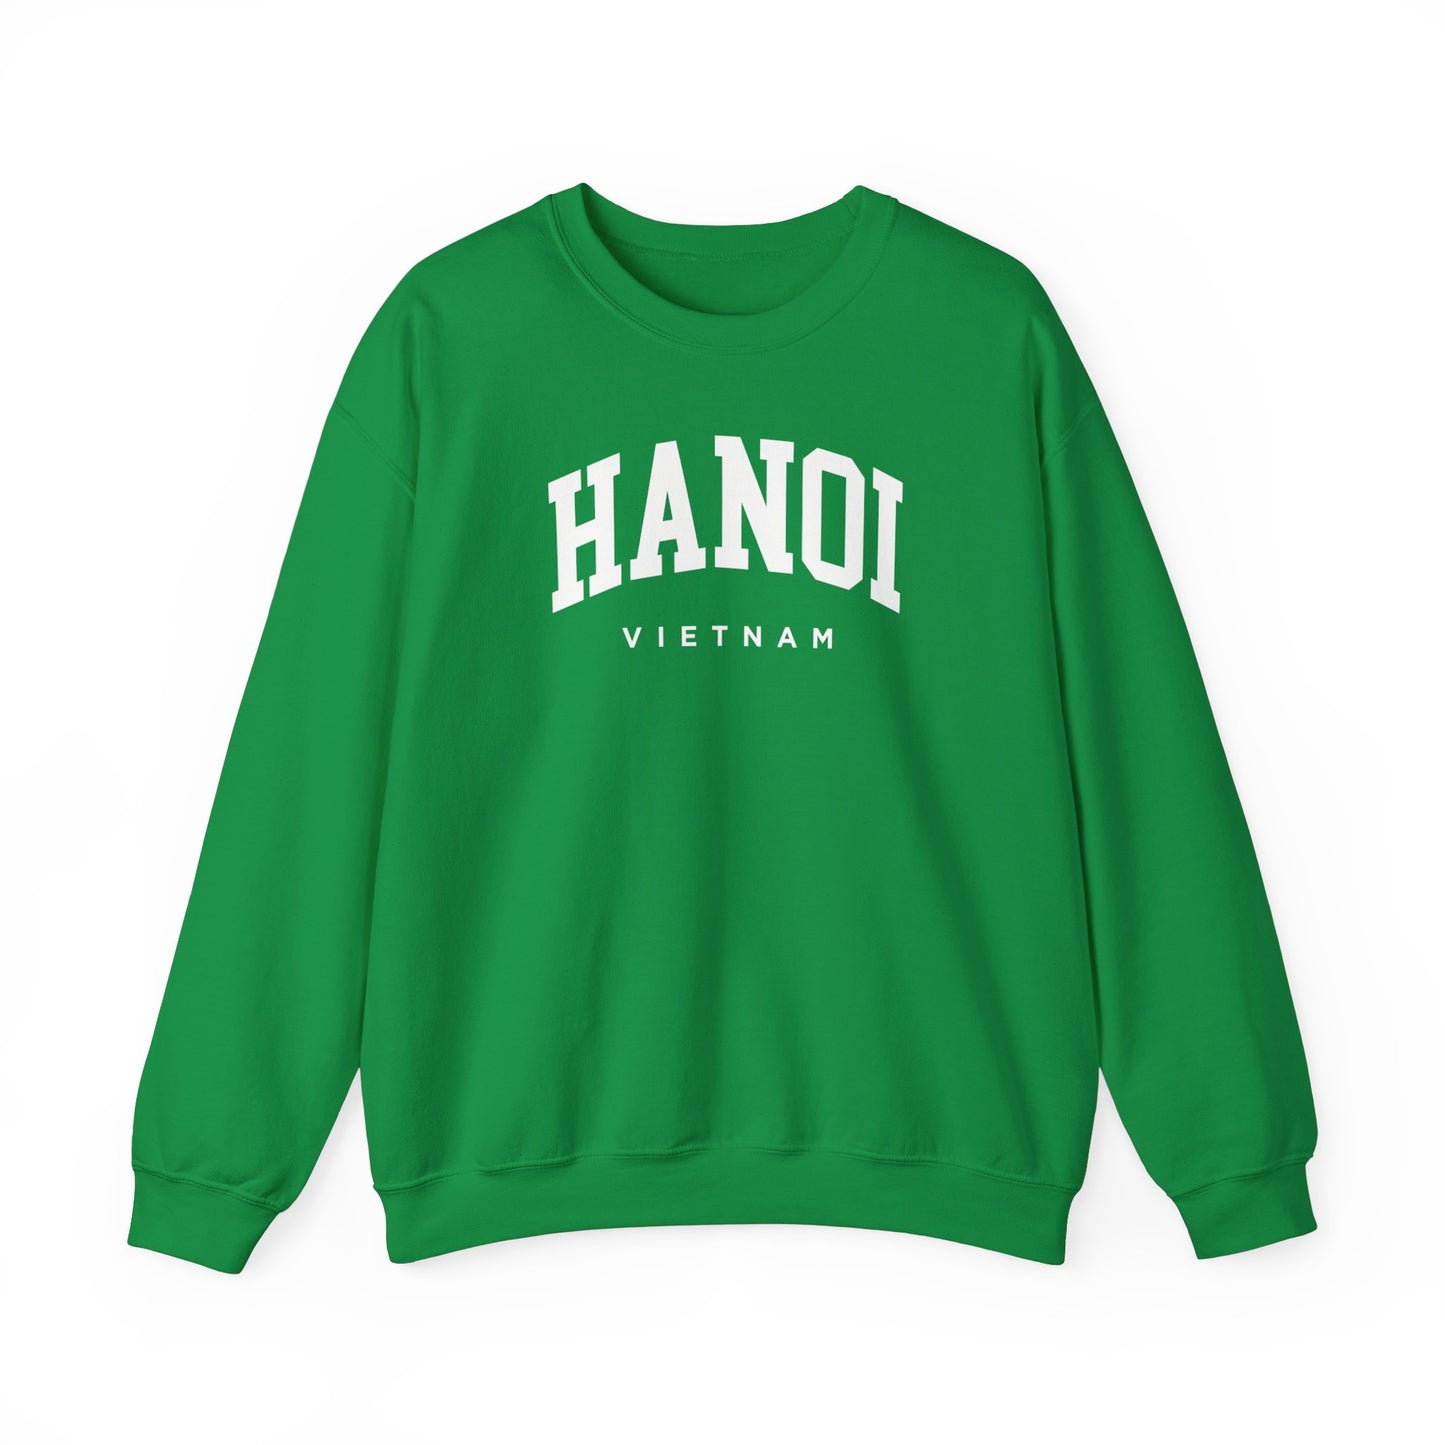 Hanoi Vietnam Sweatshirt